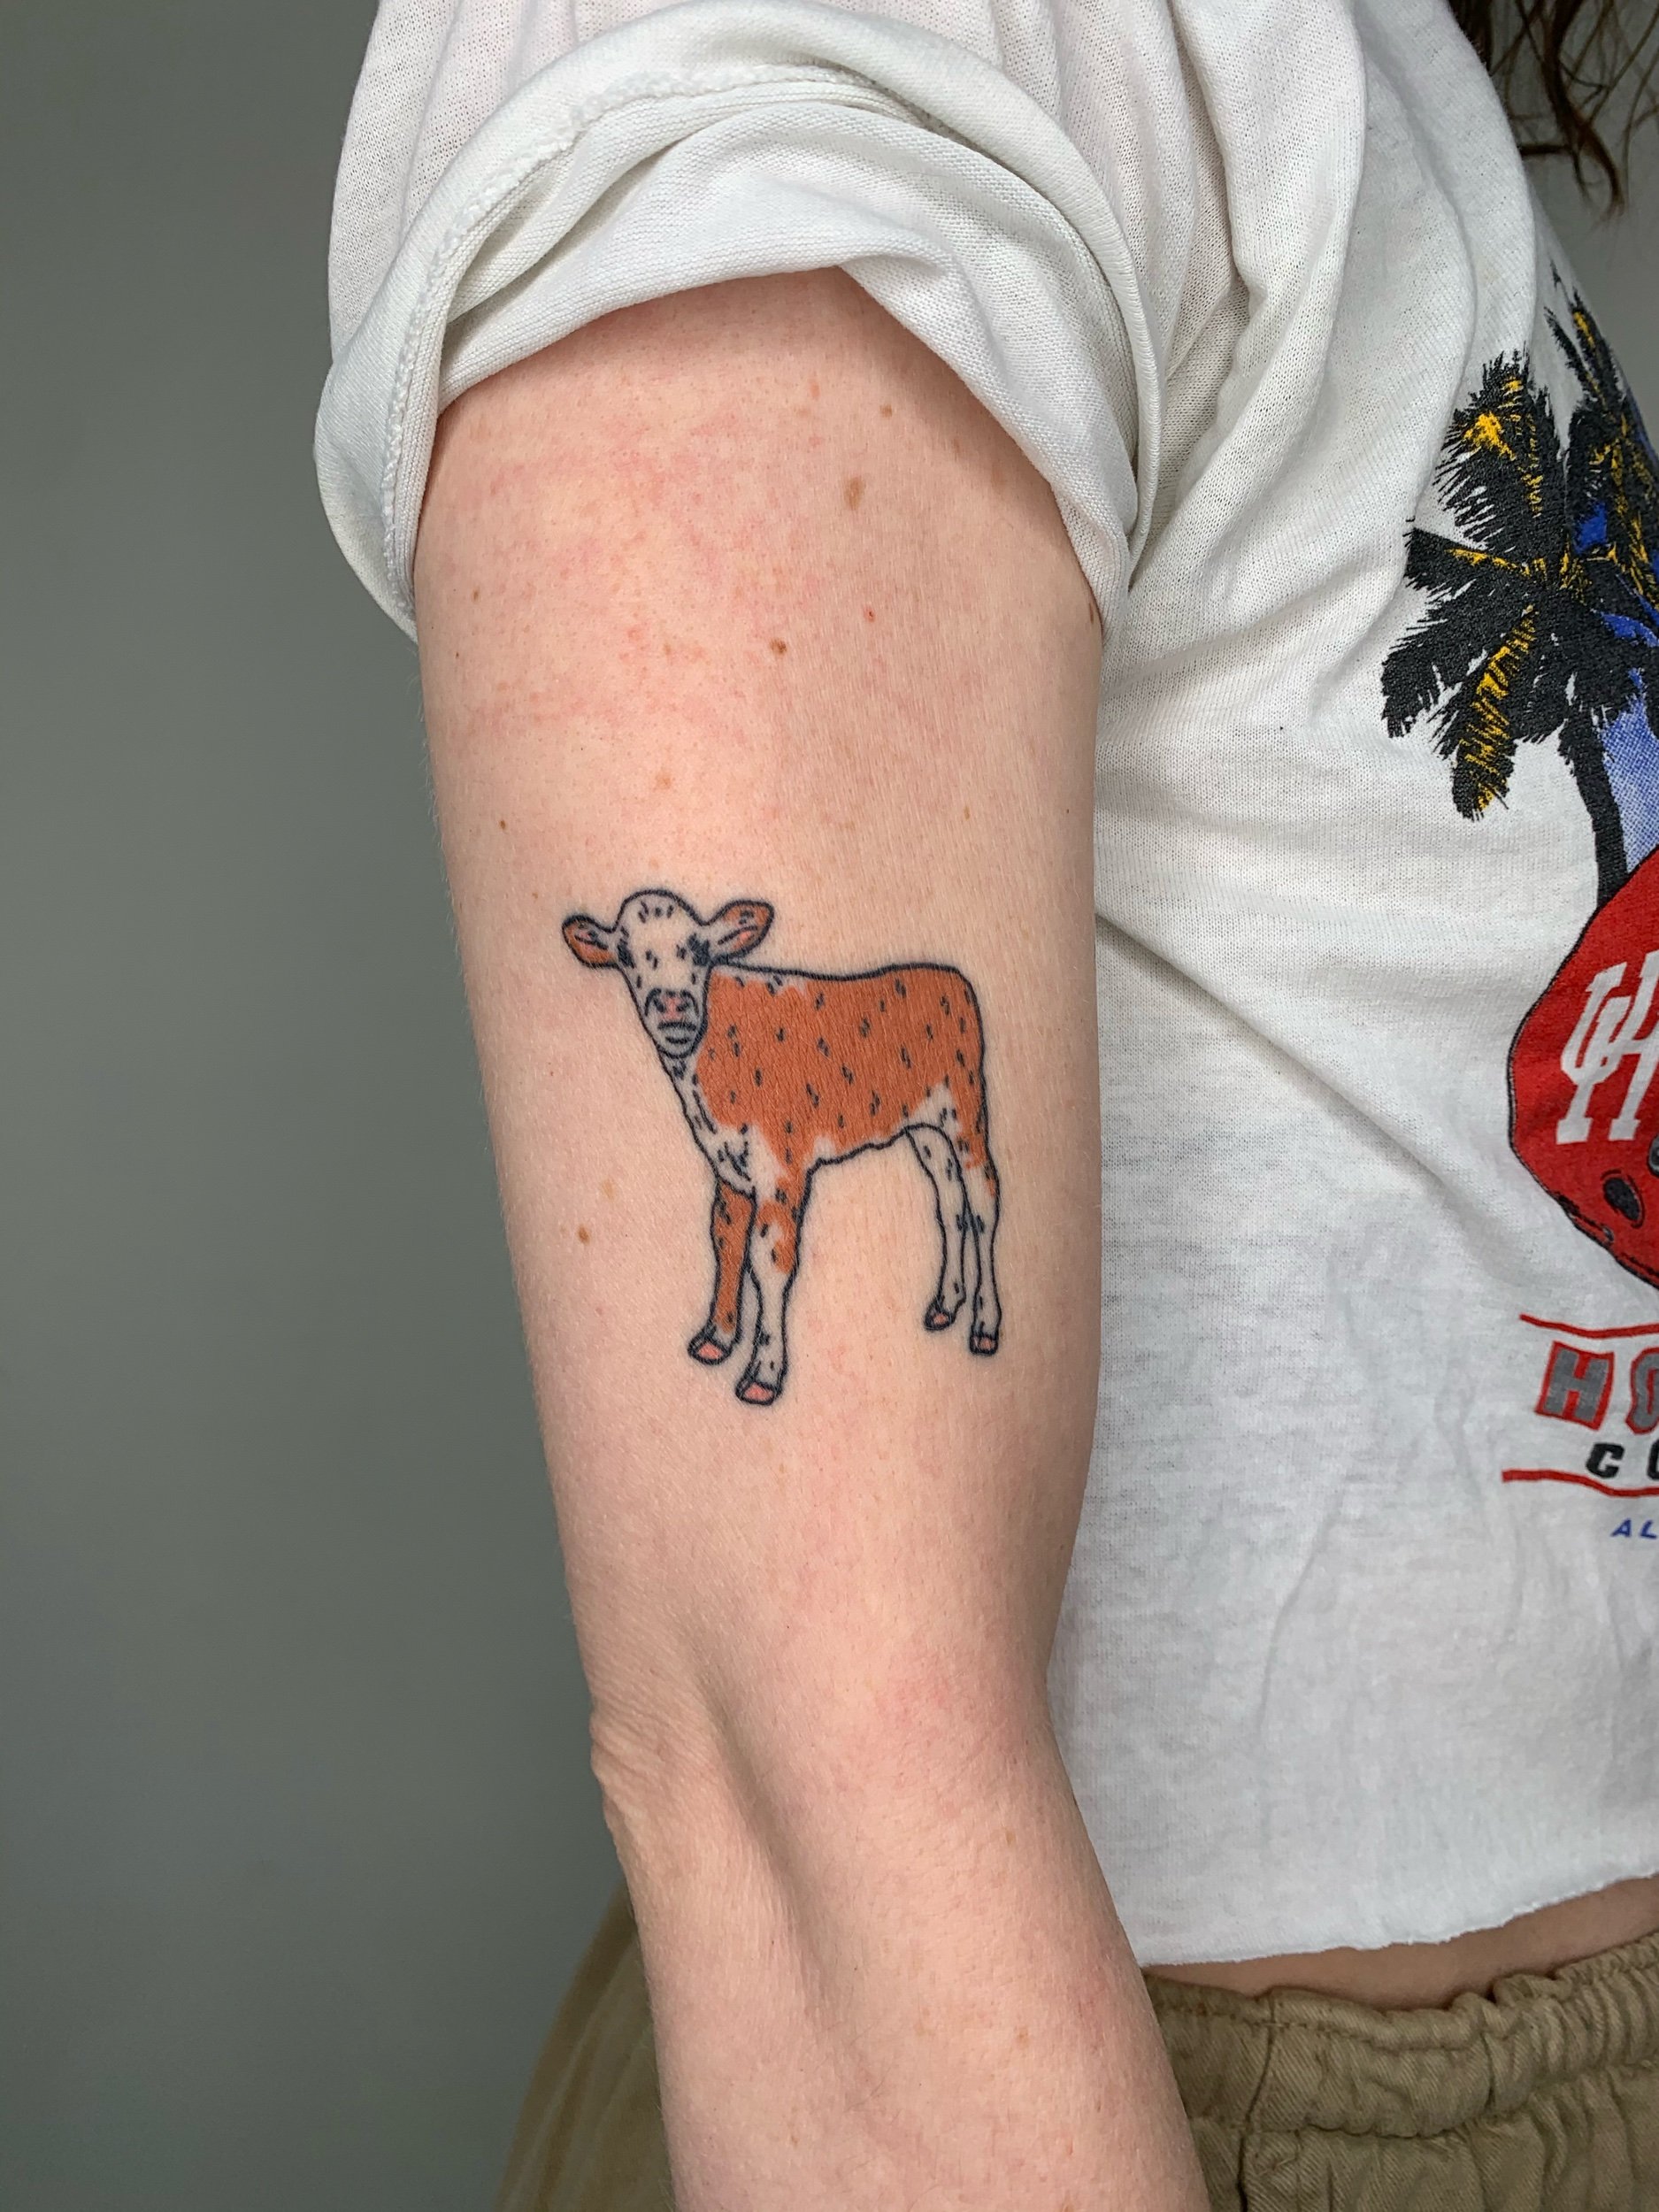 Cute cows tattoos